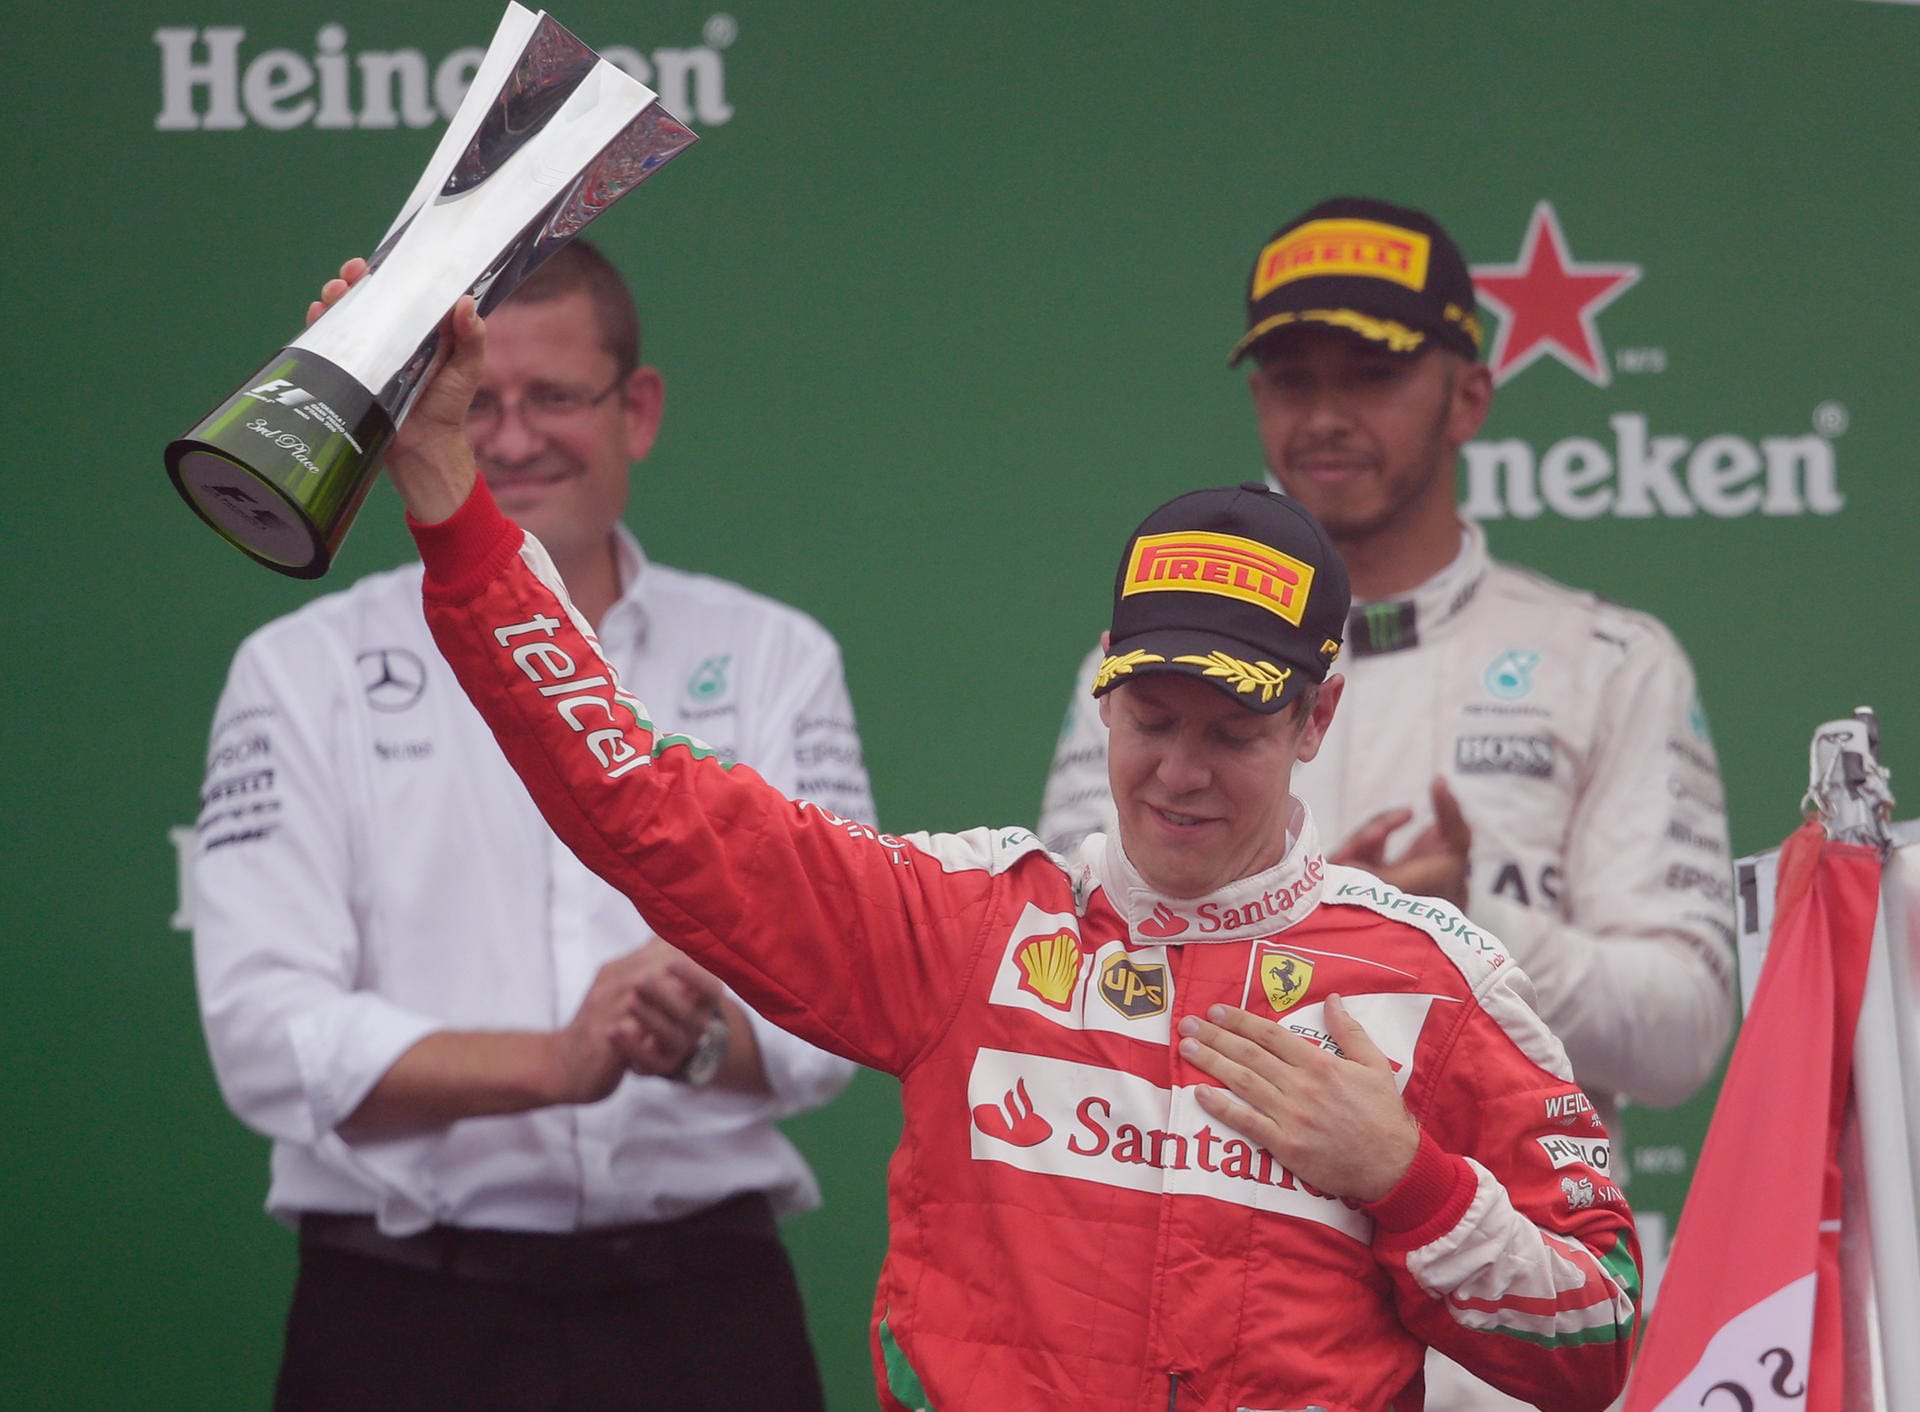 Herzensangelegenheit: Sebastian Vettel bescherte Ferrari beim Heimrennen eine Podiumsplatzierung. "Wir sind Ferrari" ließ er die Fans der Roten danach wissen.